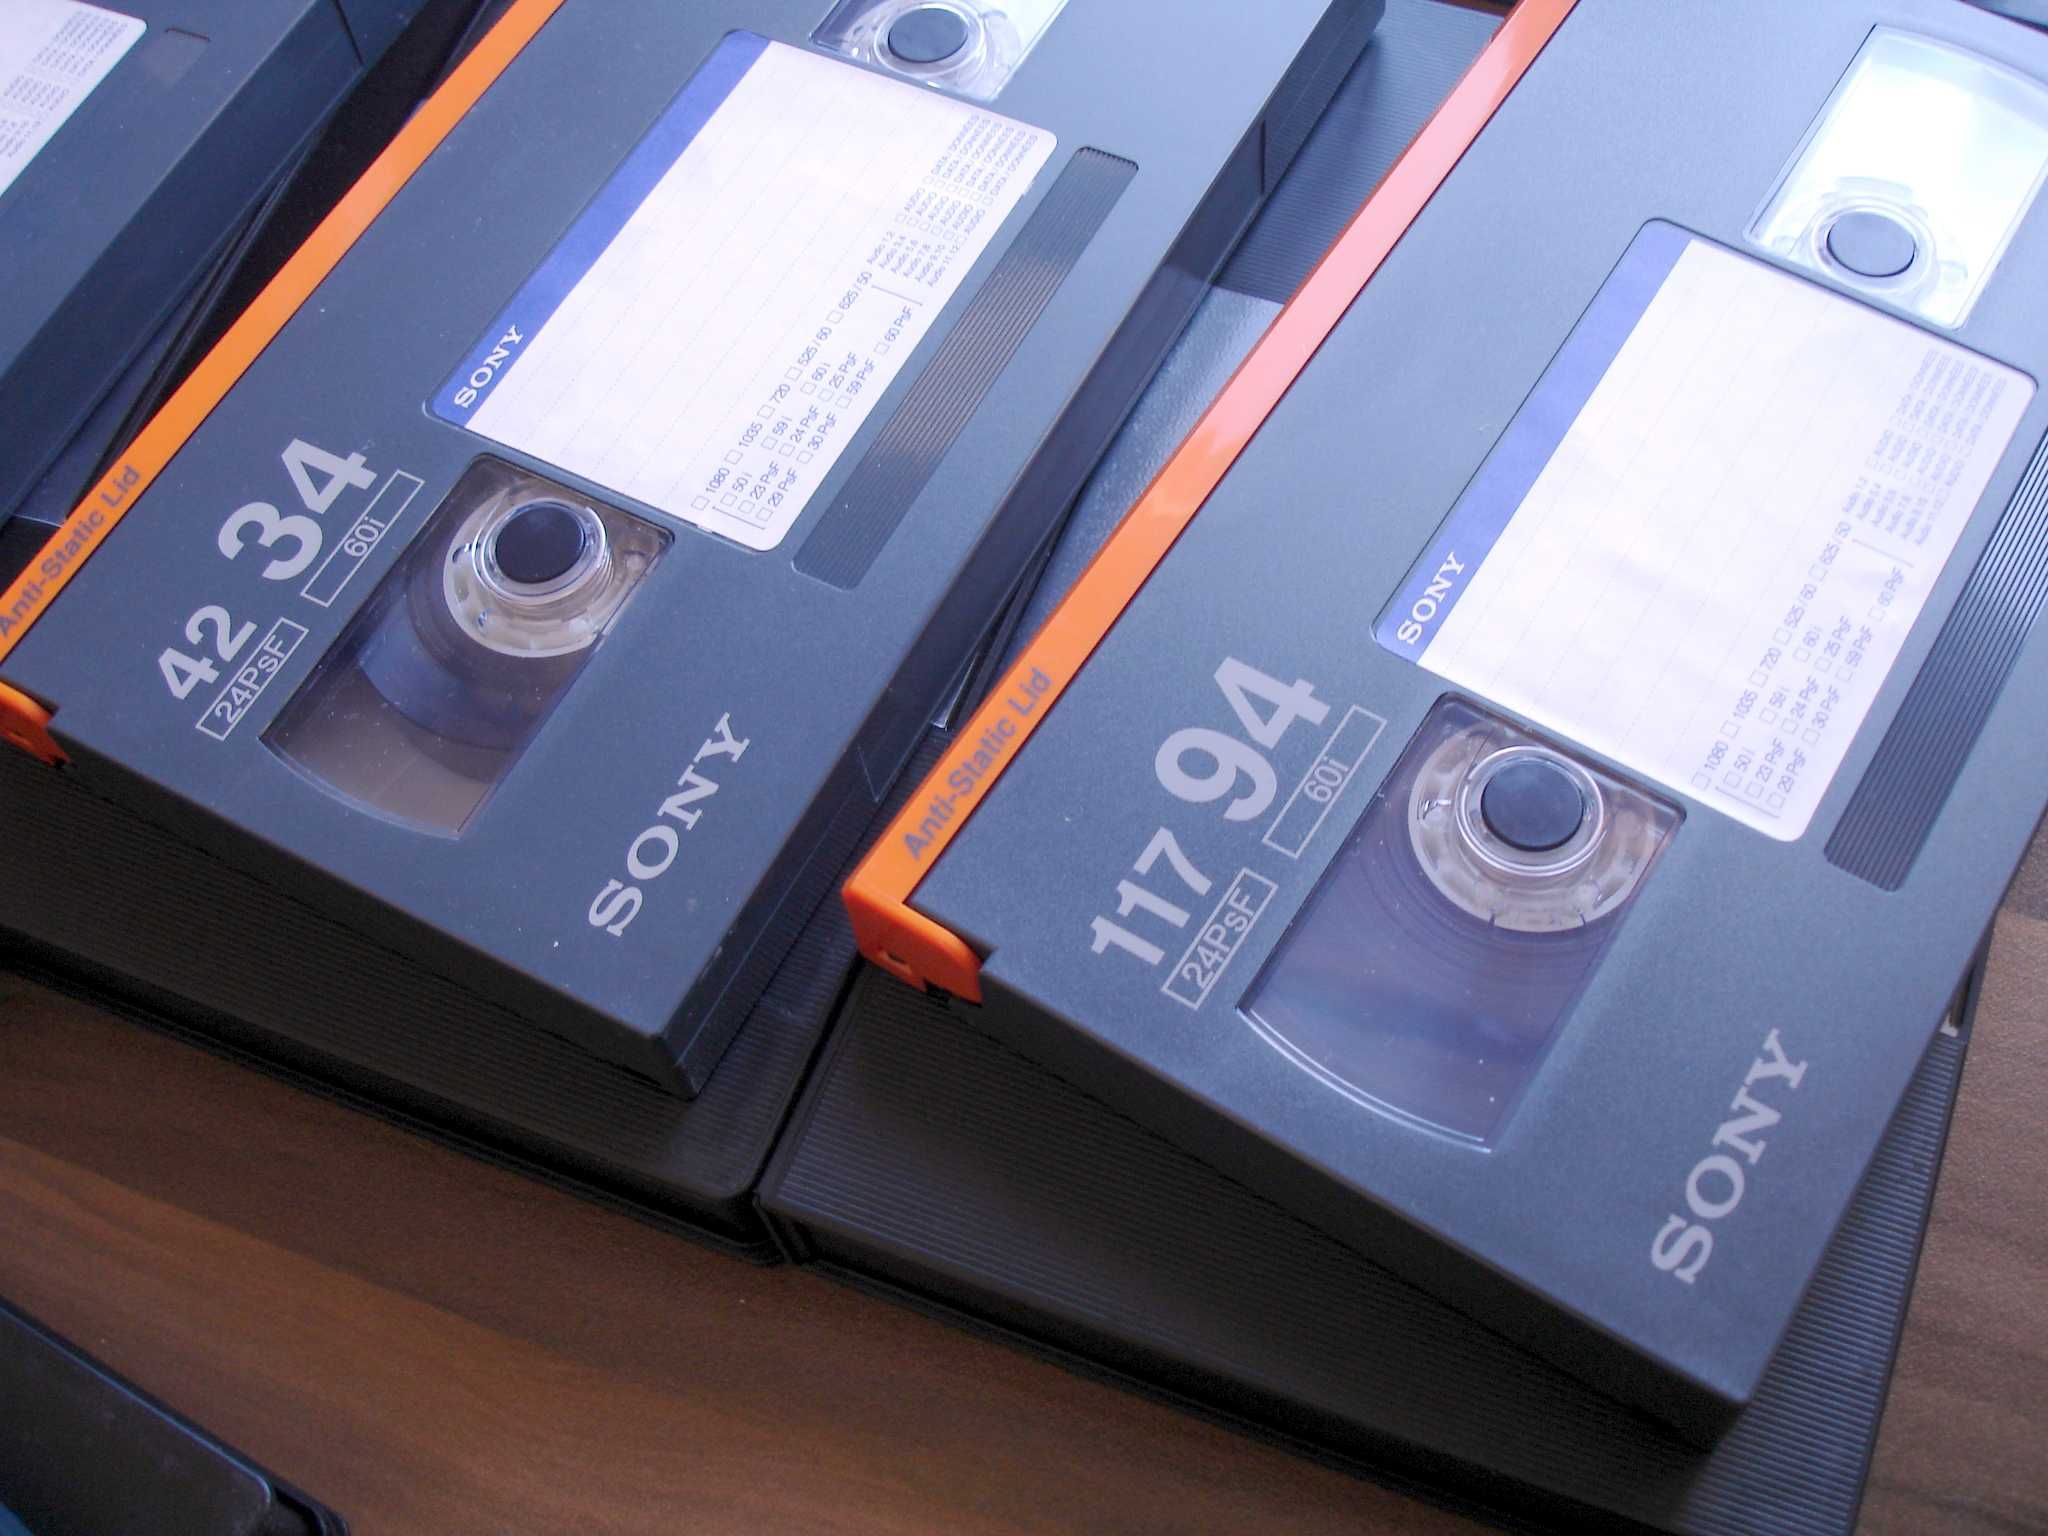 Sony HDCAM - Професионални видеокасети